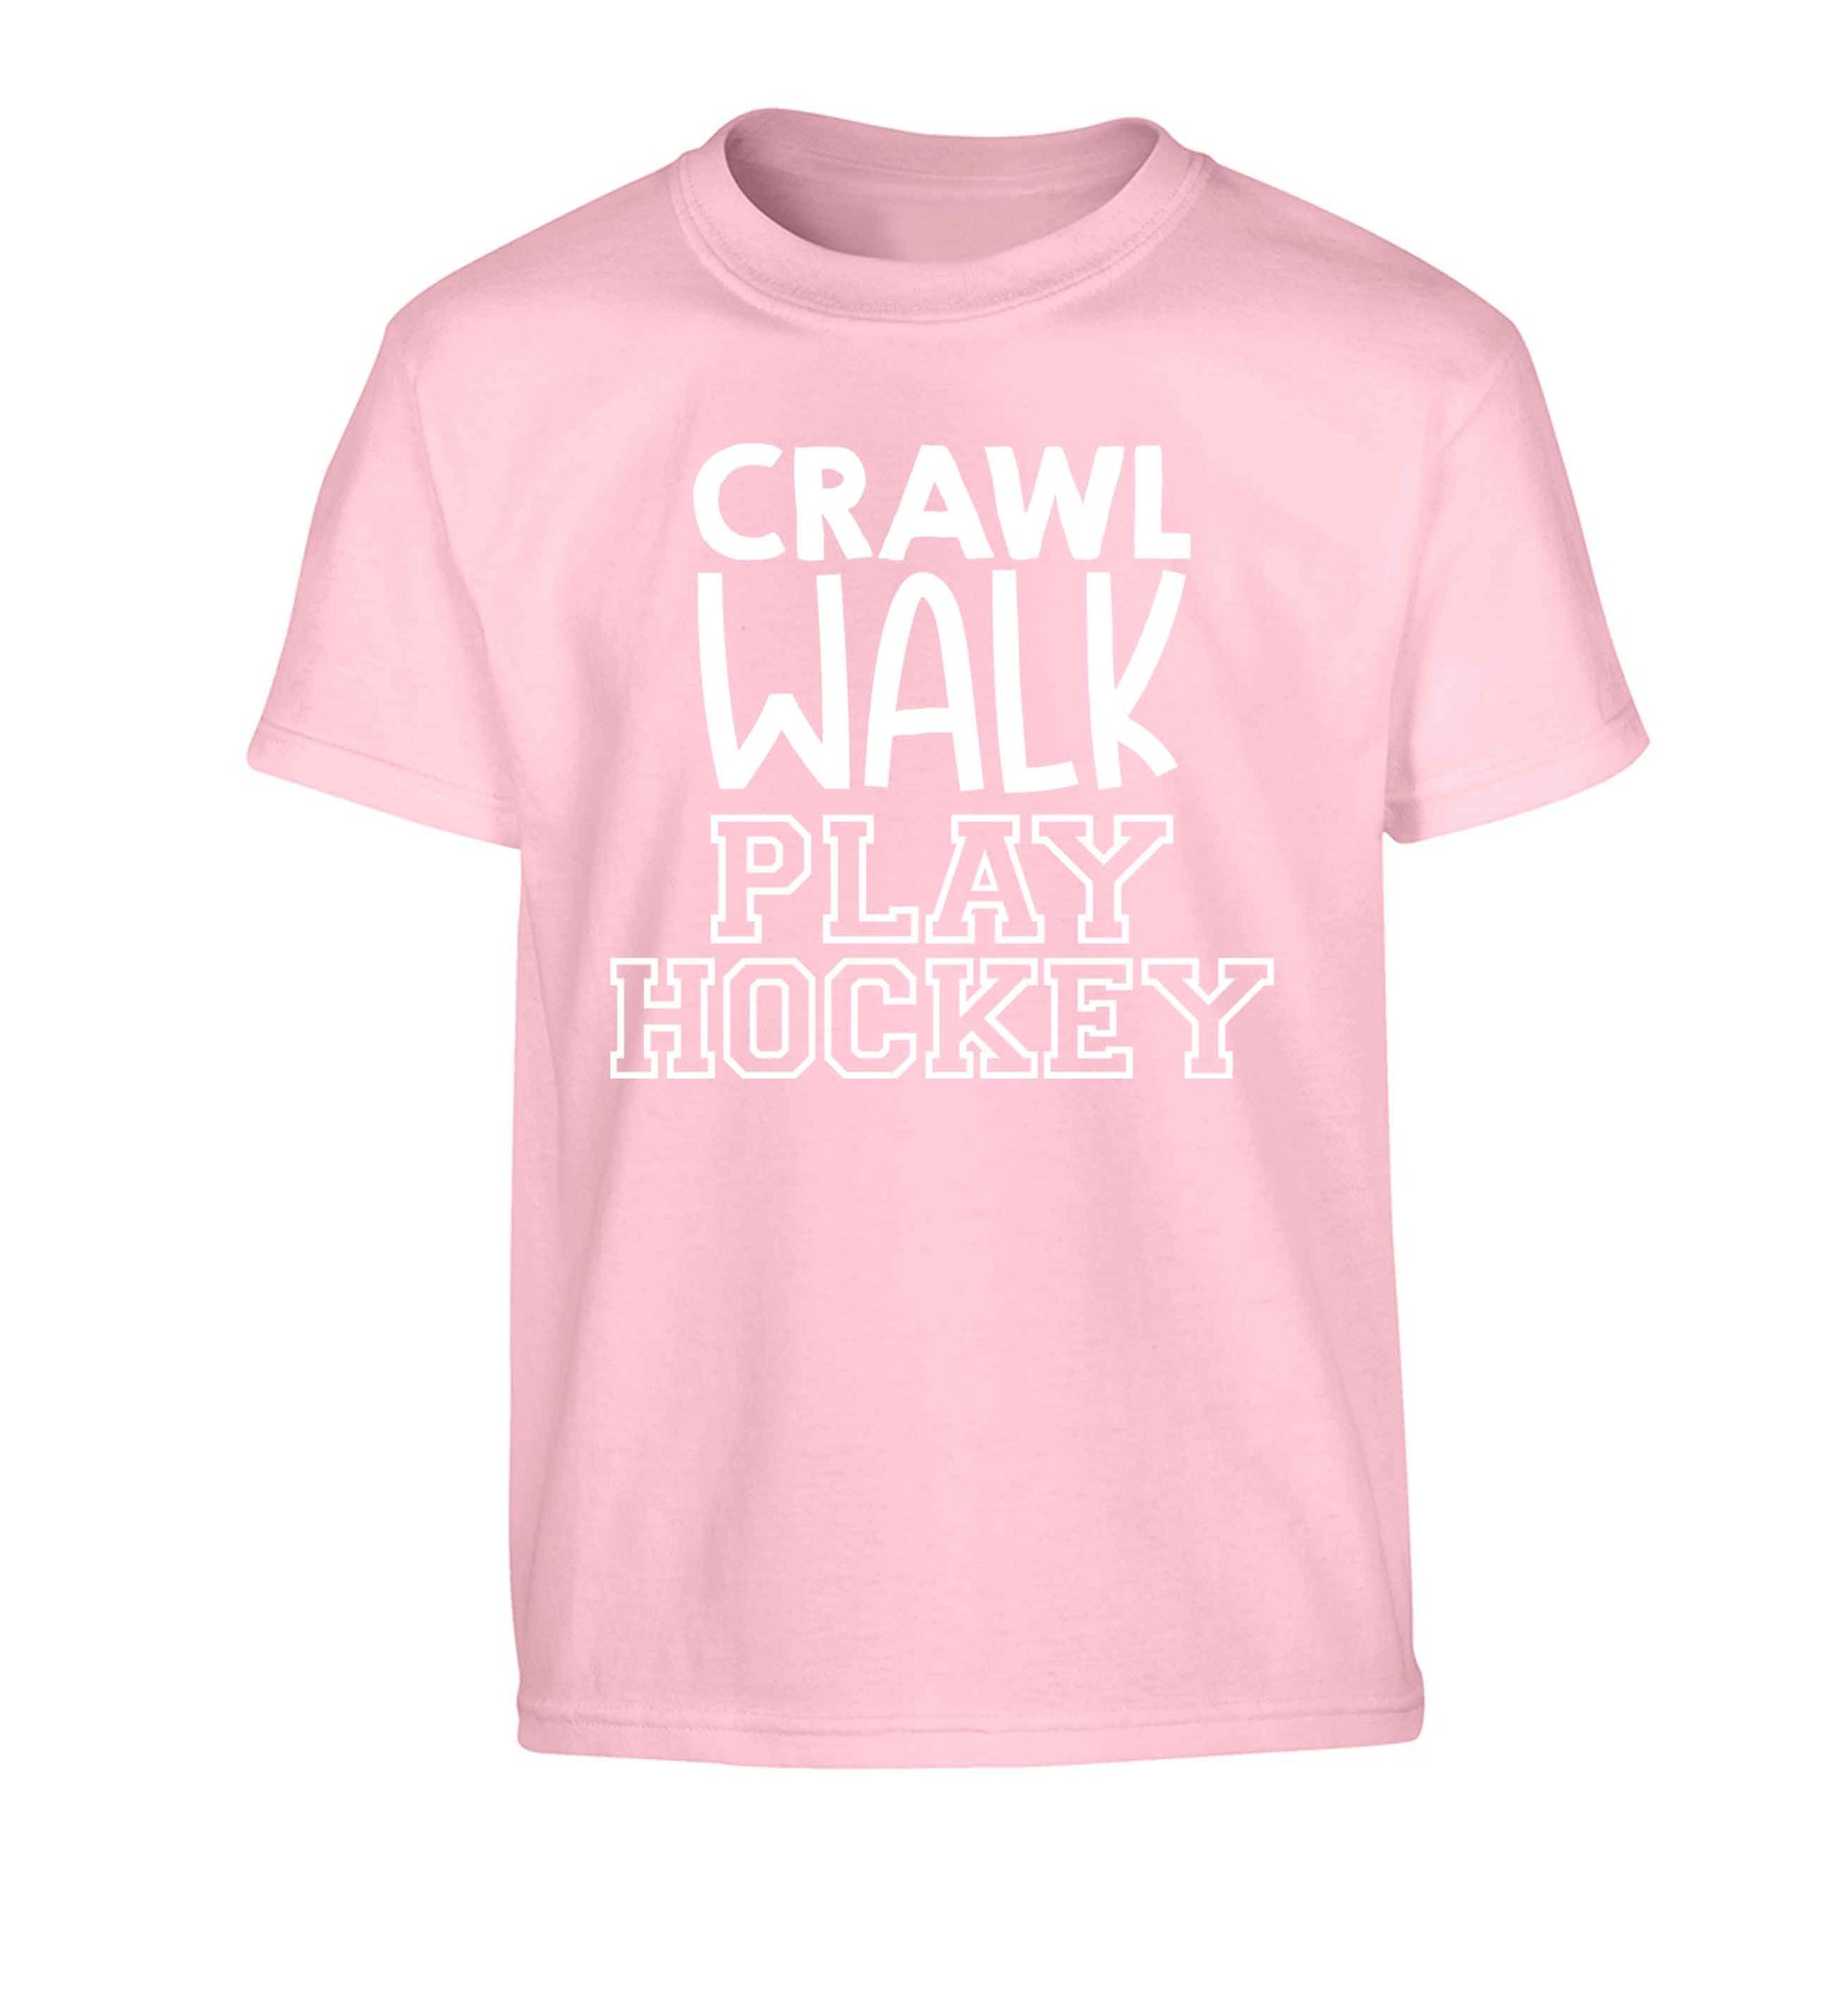 Crawl walk play hockey Children's light pink Tshirt 12-13 Years